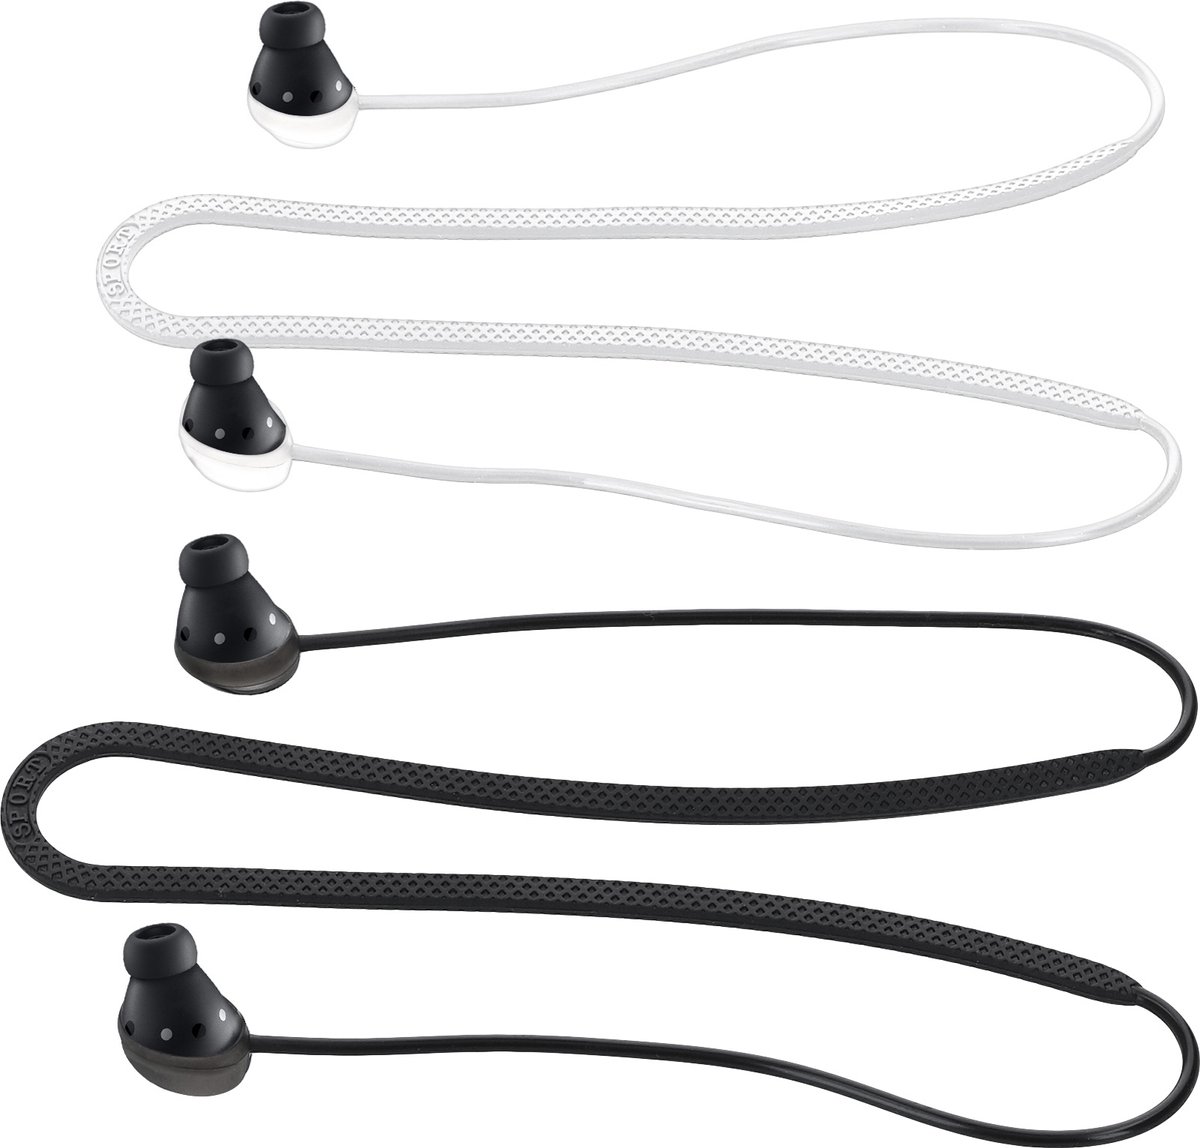 kwmobile 2x oordopjes koord - Compatibel met Samsung Galaxy Buds Pro - Voor draadloze oordoppen tegen verlies - In zwart / wit